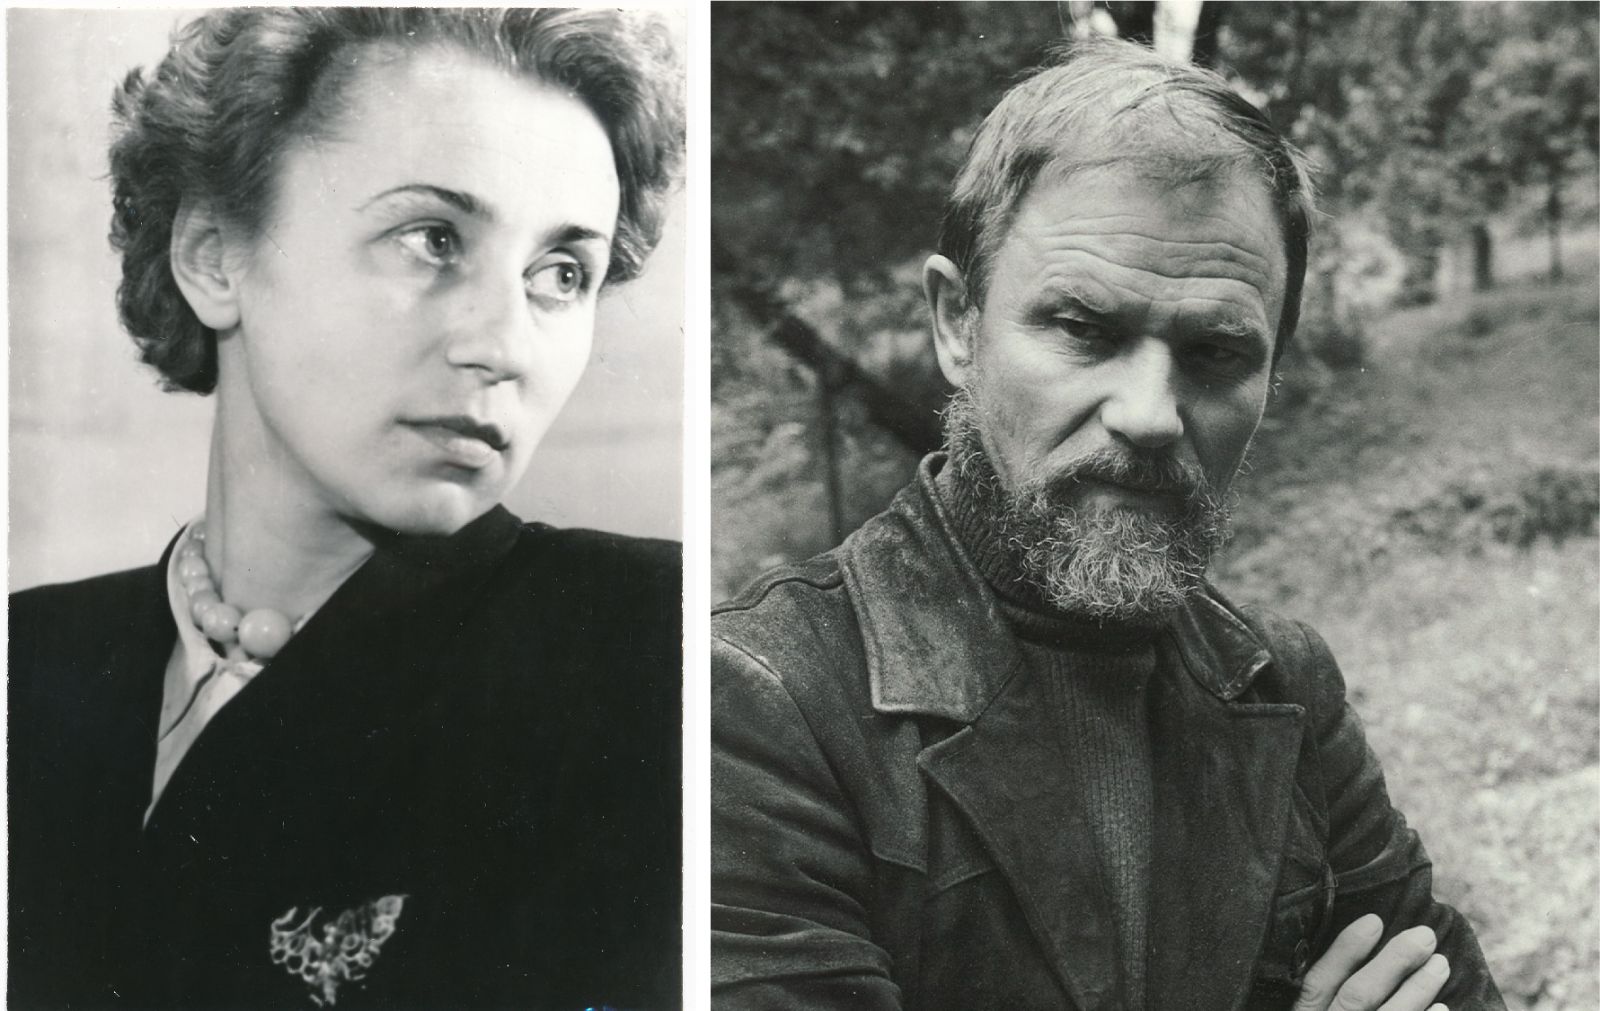 Scenos aristokratais vieną kartą pavadintus menininkus Stasį Petronaitį (1932–2016) ir Reginą Zdanavičiūtę (1925–2015) tas vardas lydėjo visą gyvenimą – sutuoktiniai aktoriai iš tikrųjų tokie ir buvo.